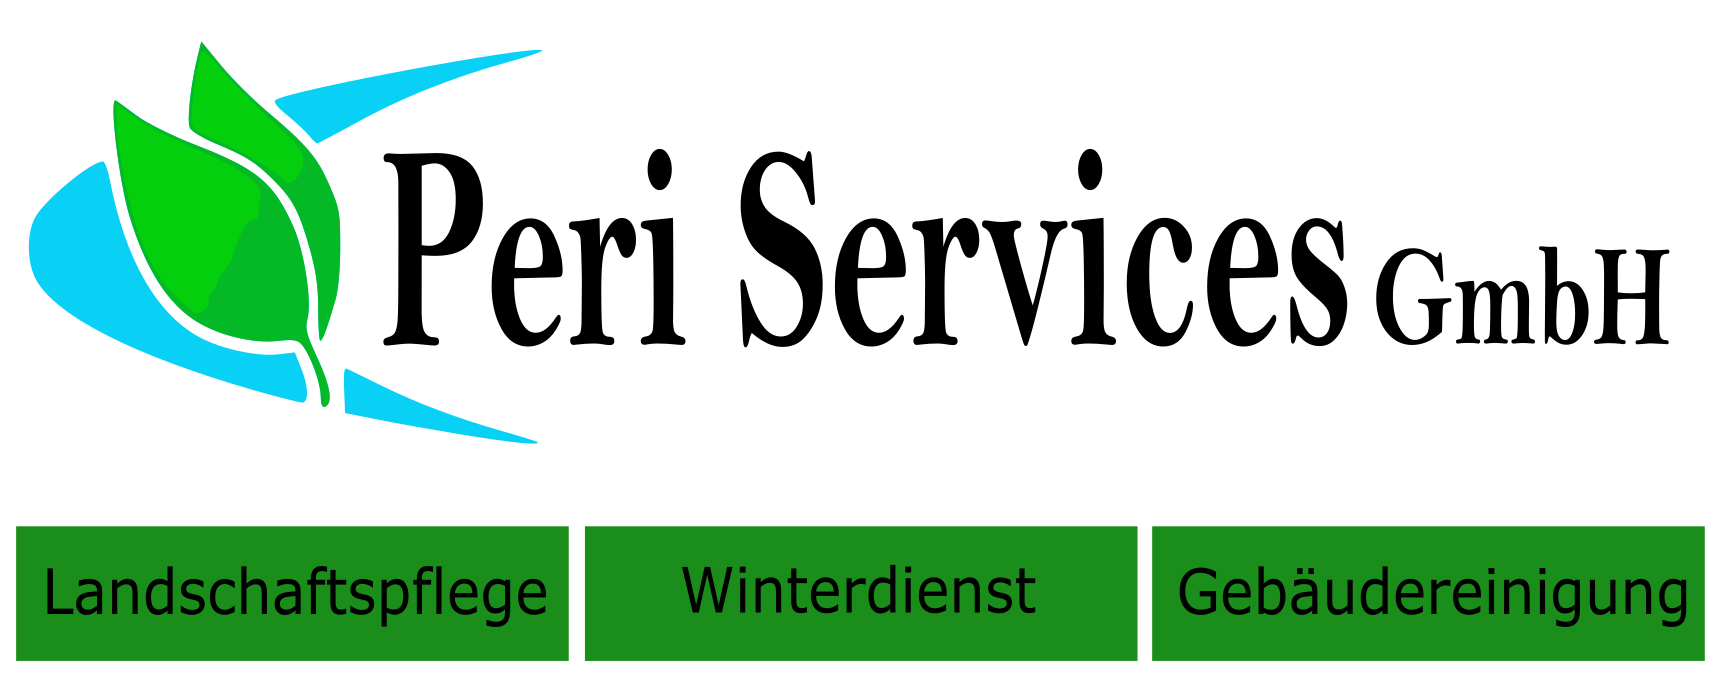 Peri Services GmbH | Garten- und Landschaftsbau | Baum- und Grünflächenpflege | Gebäudereinigung | Winterdienst | Facility Management | Entrümpelungen in Wuppertal